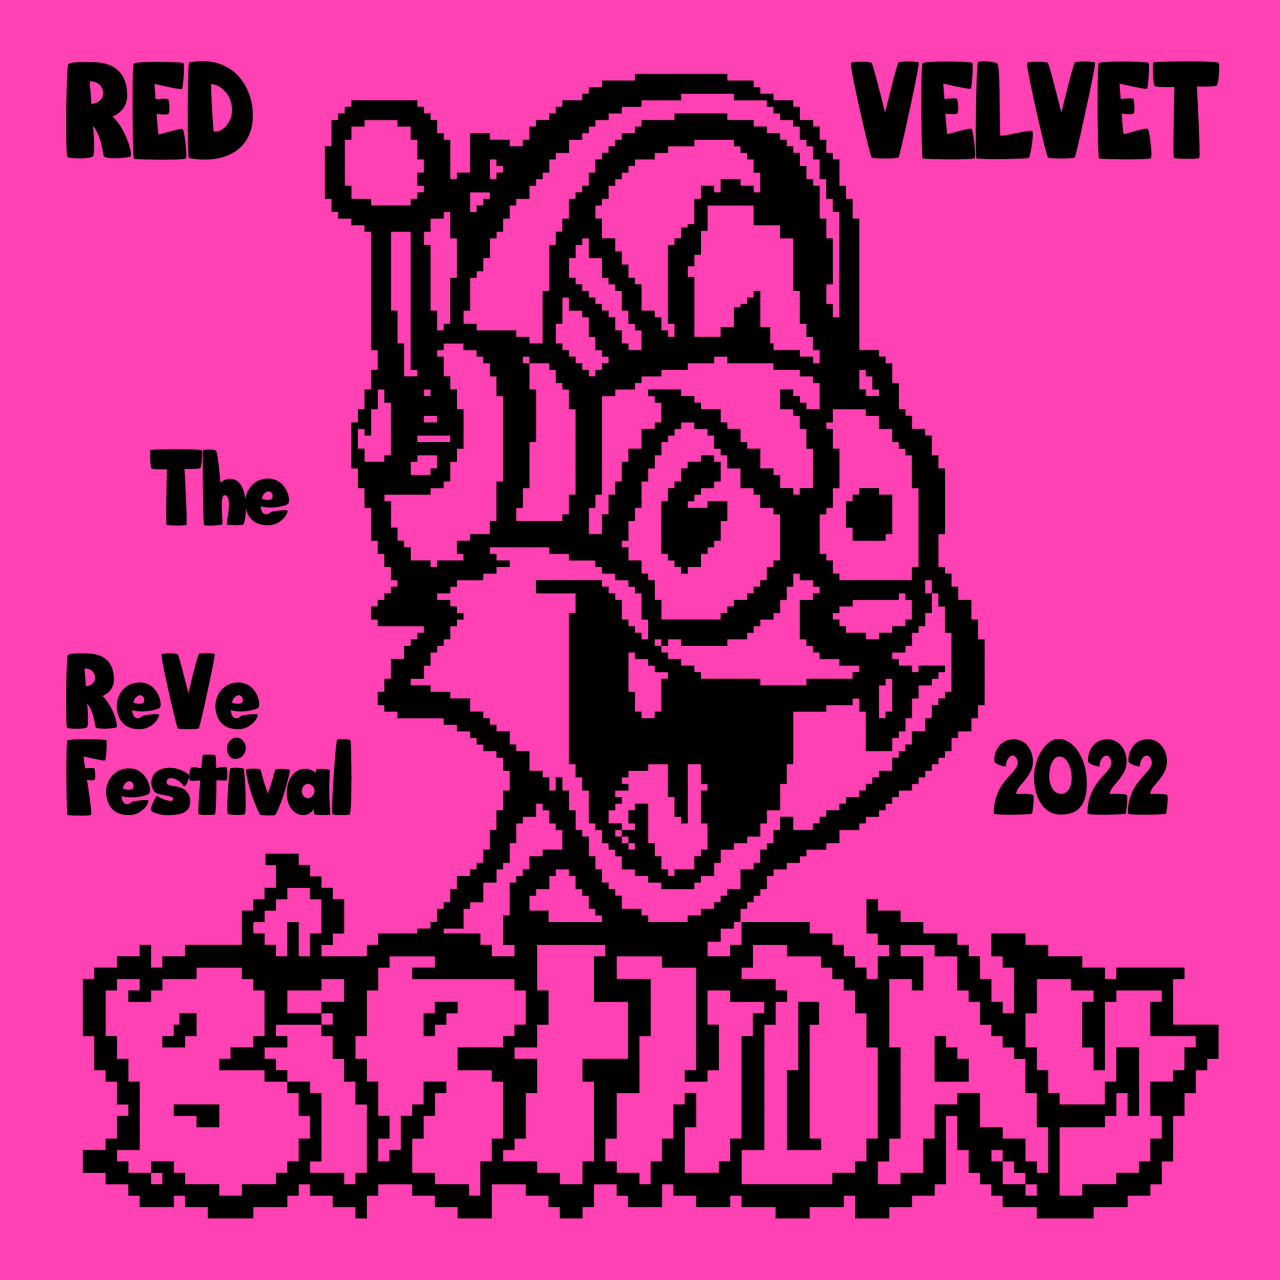 An image of Red Velvet's new album 